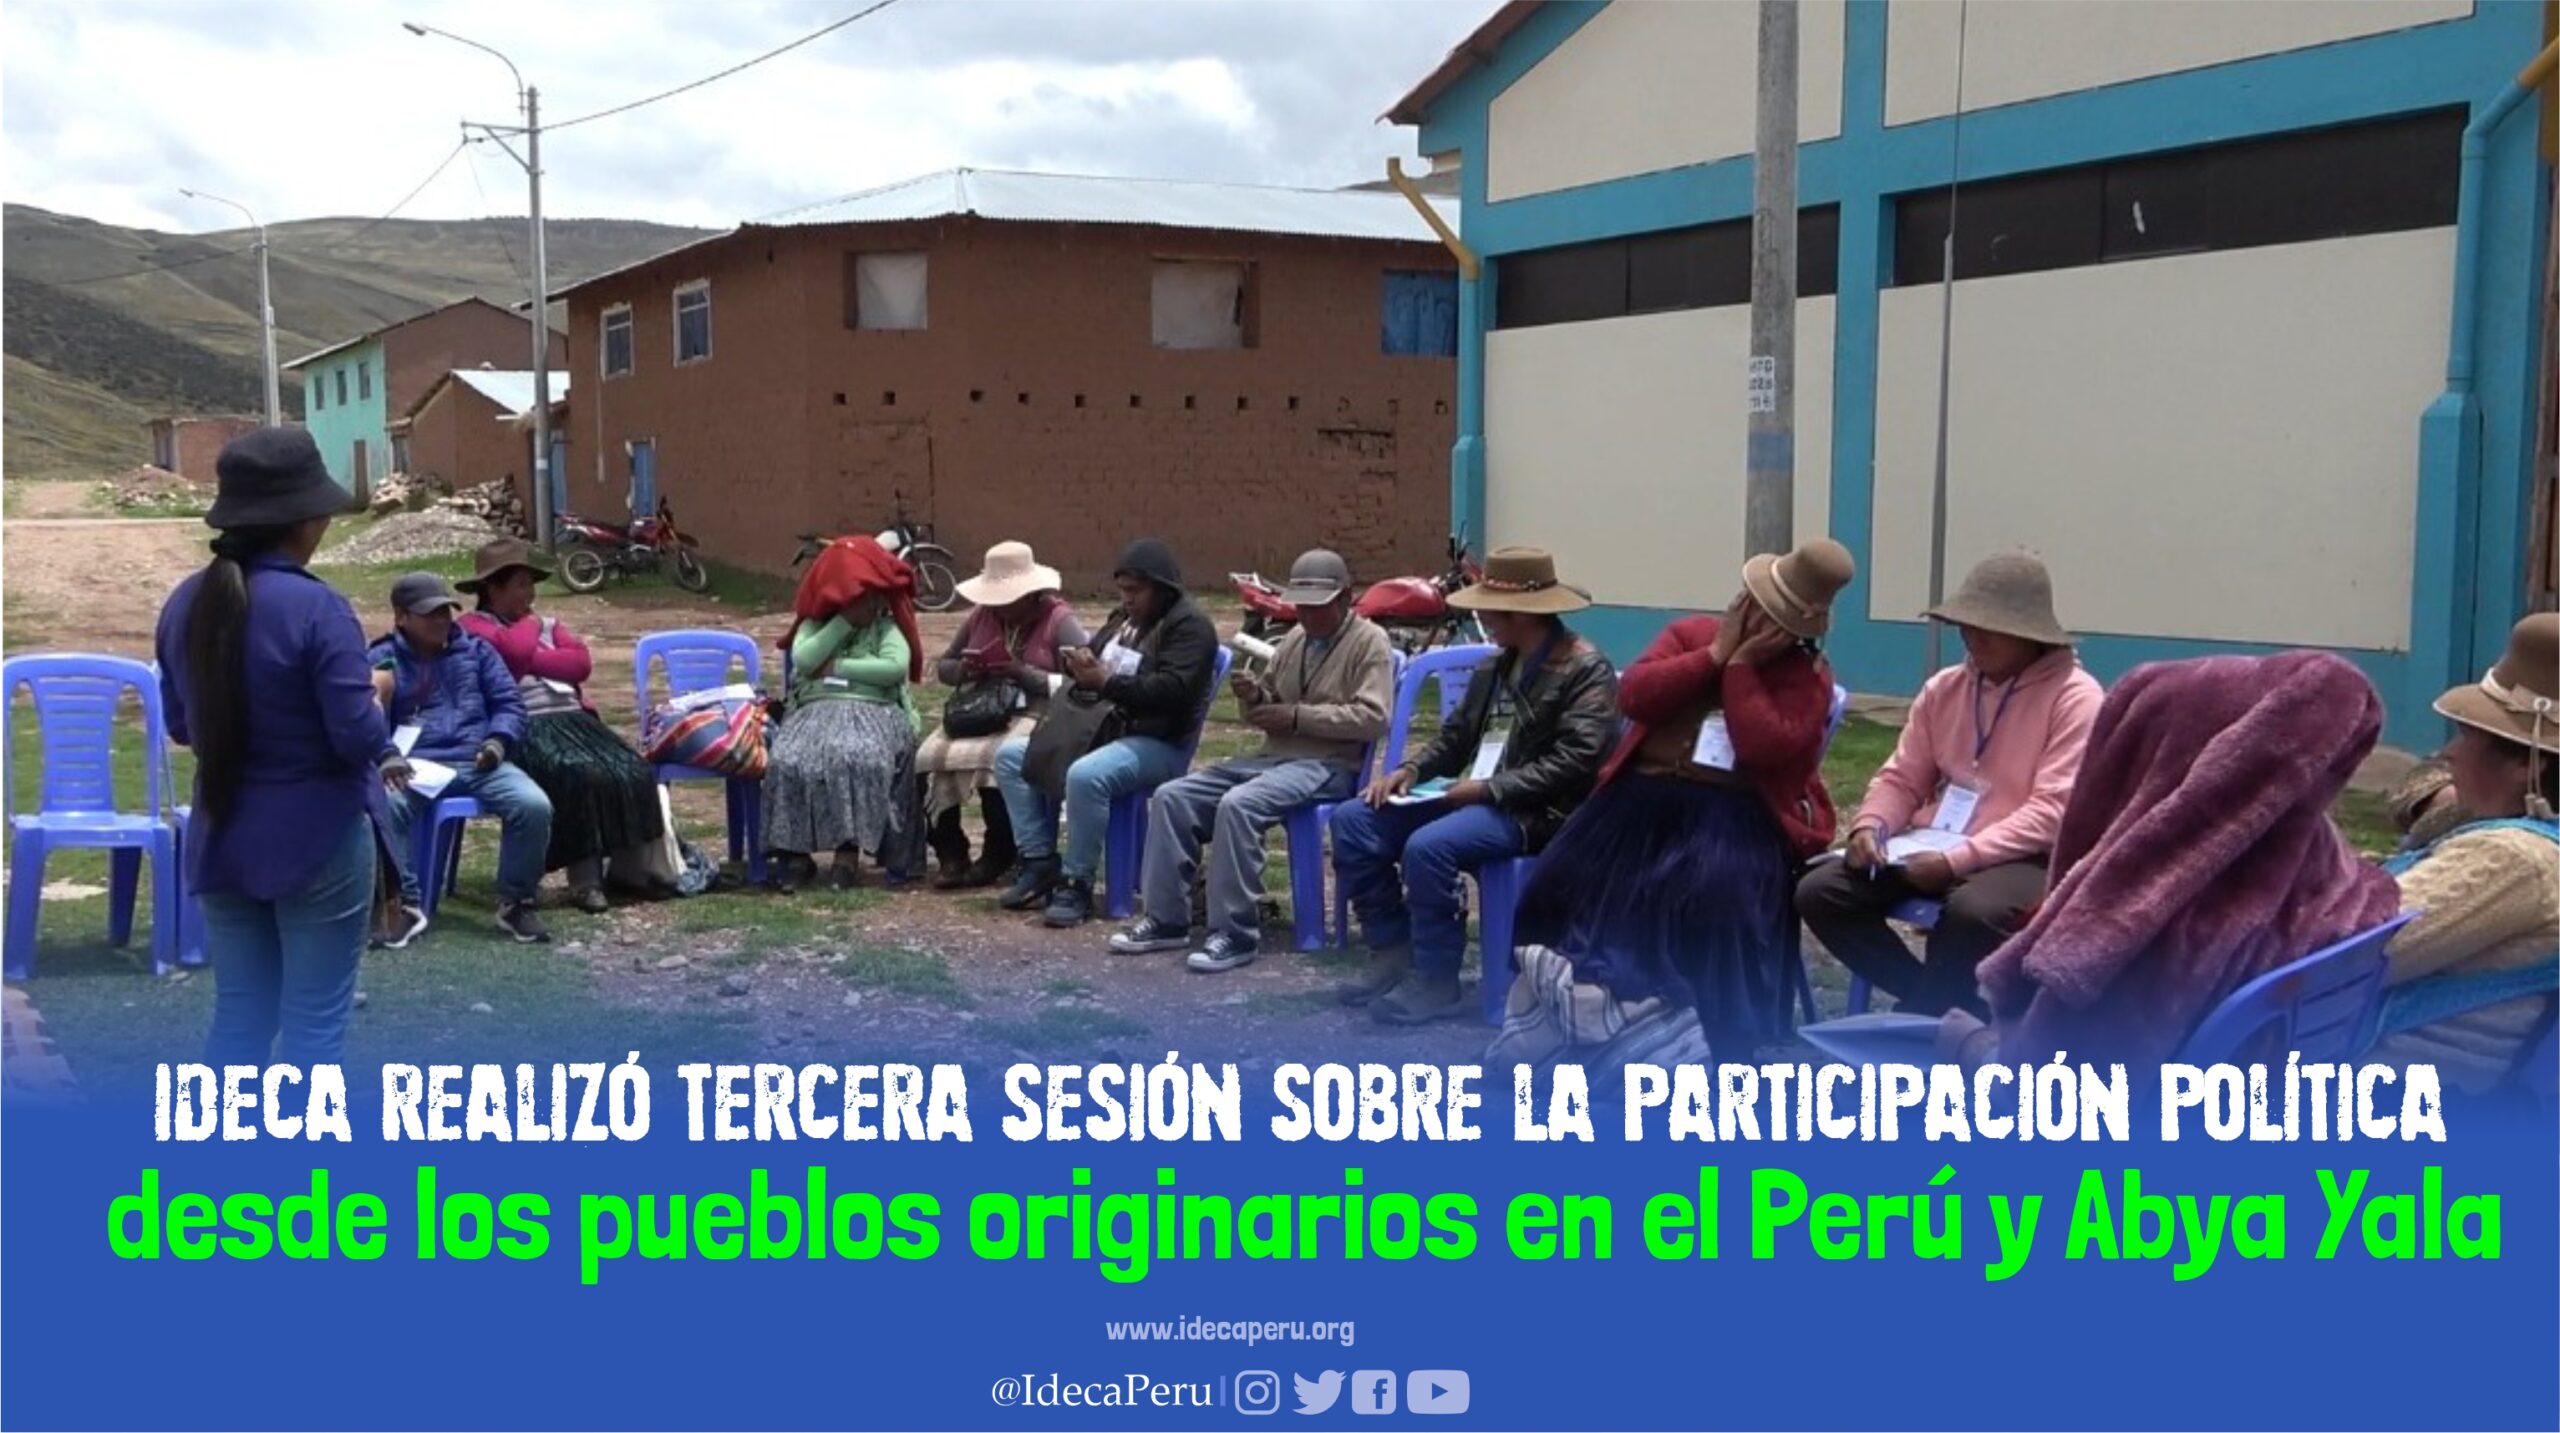 IDECA realizó tercer taller sobre la participación política desde los pueblos originarios en el Perú y Abya Yala